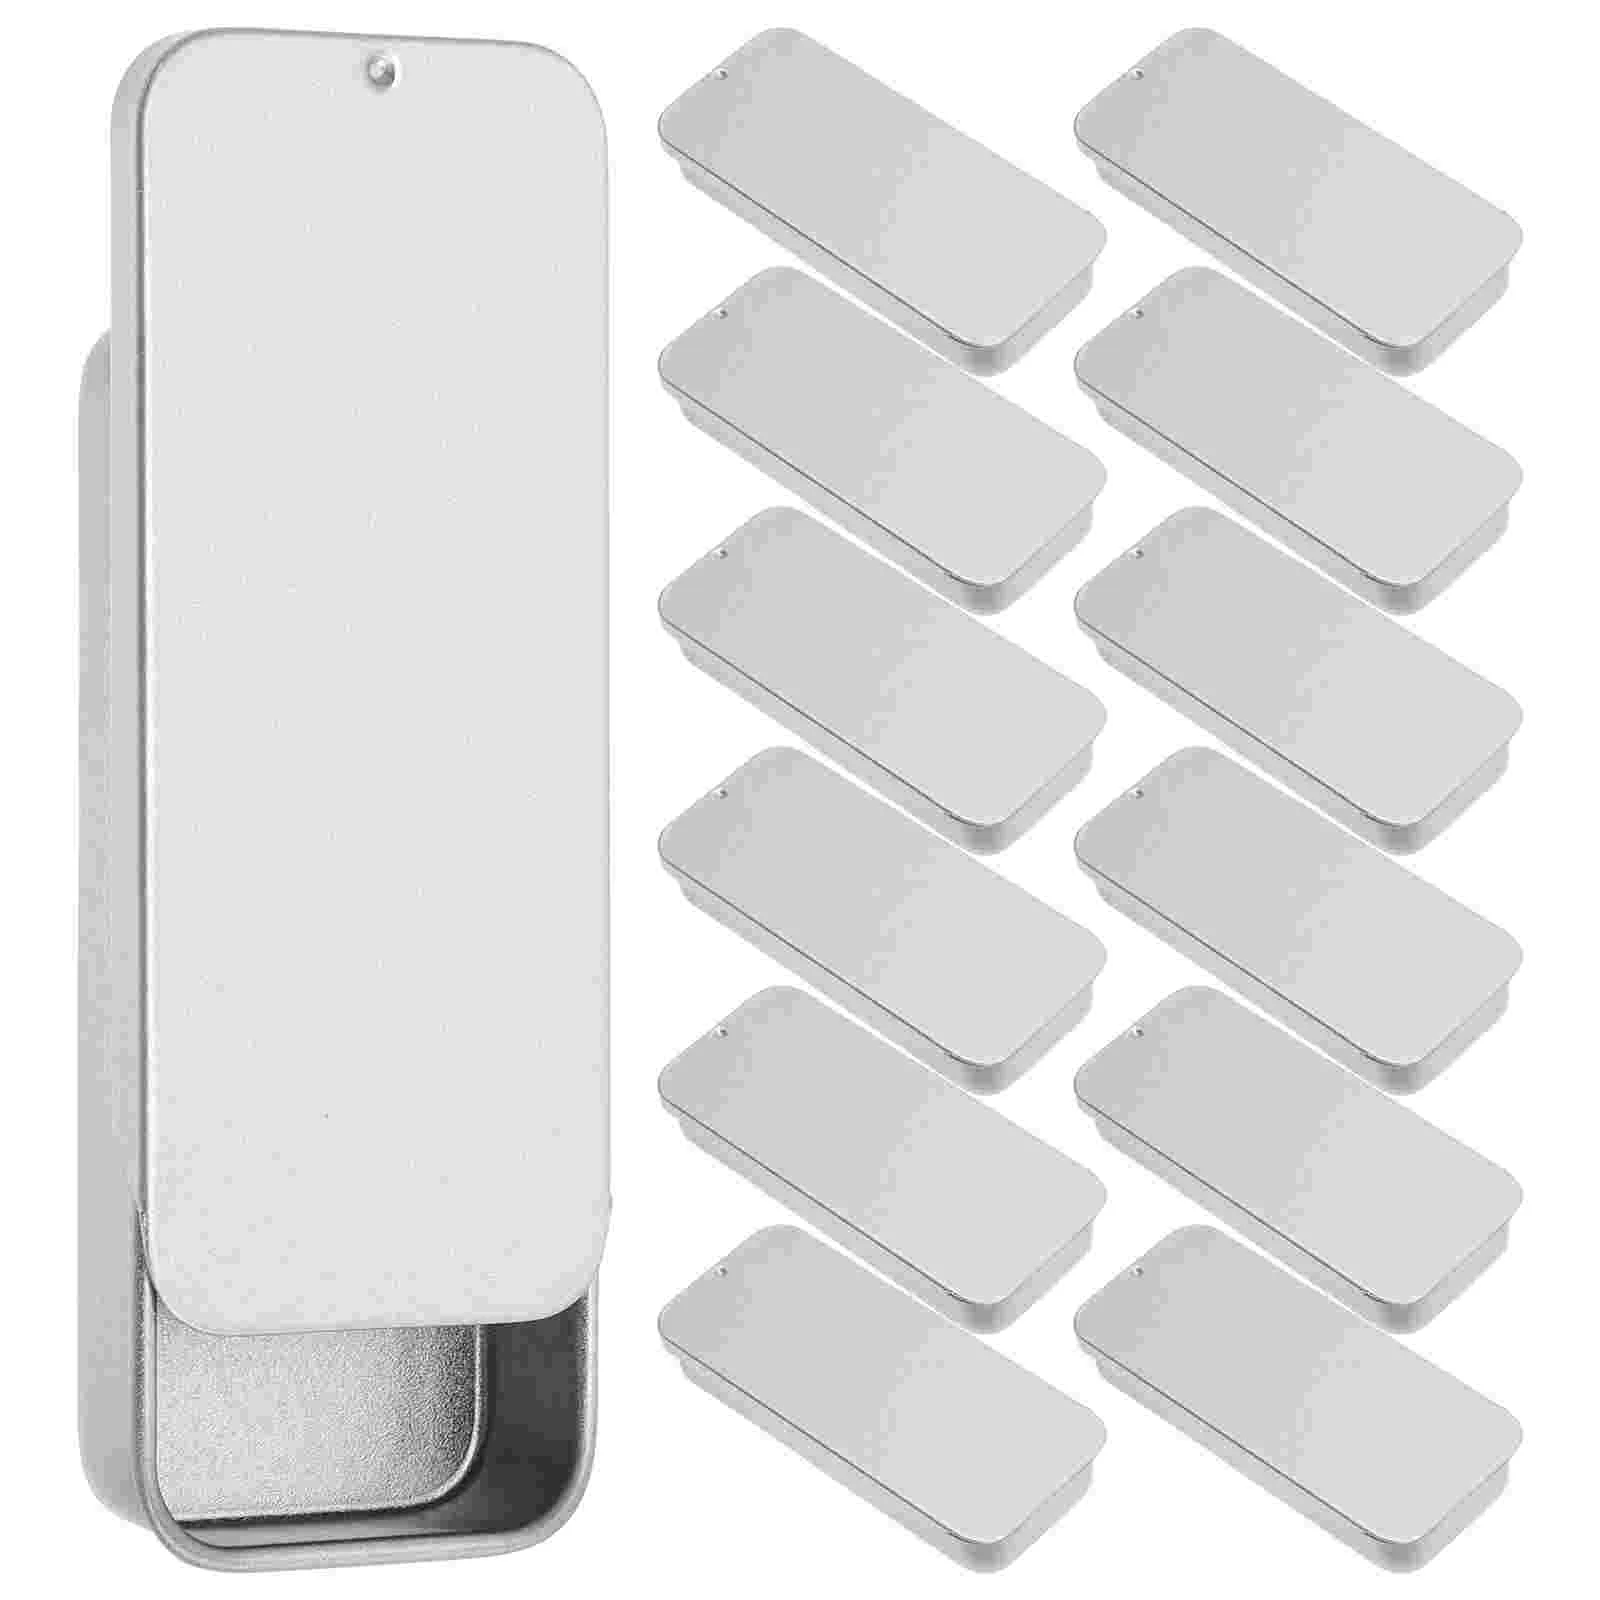 

14 Pcs Cotton Swabs Floss Case Picks Dispenser Organizer Container Makeup Pads Storage Boxes Portable Dental